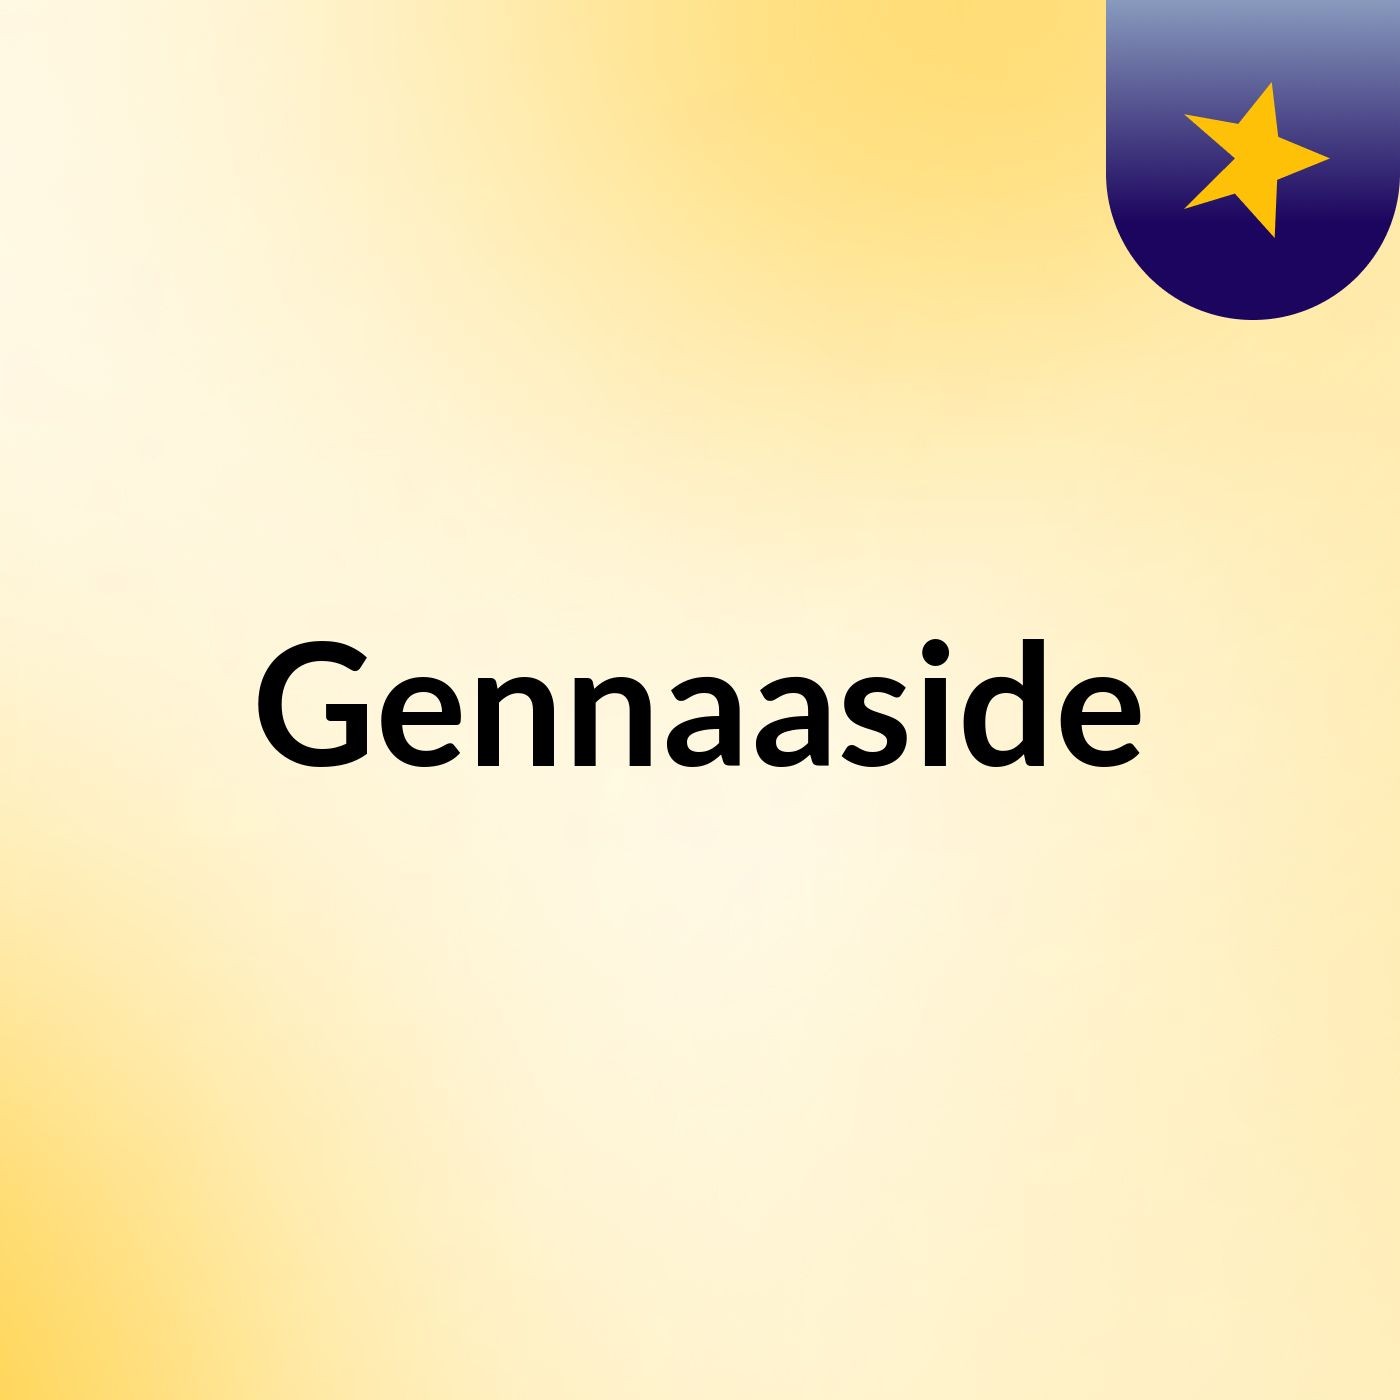 Episode 6 - Gennaaside